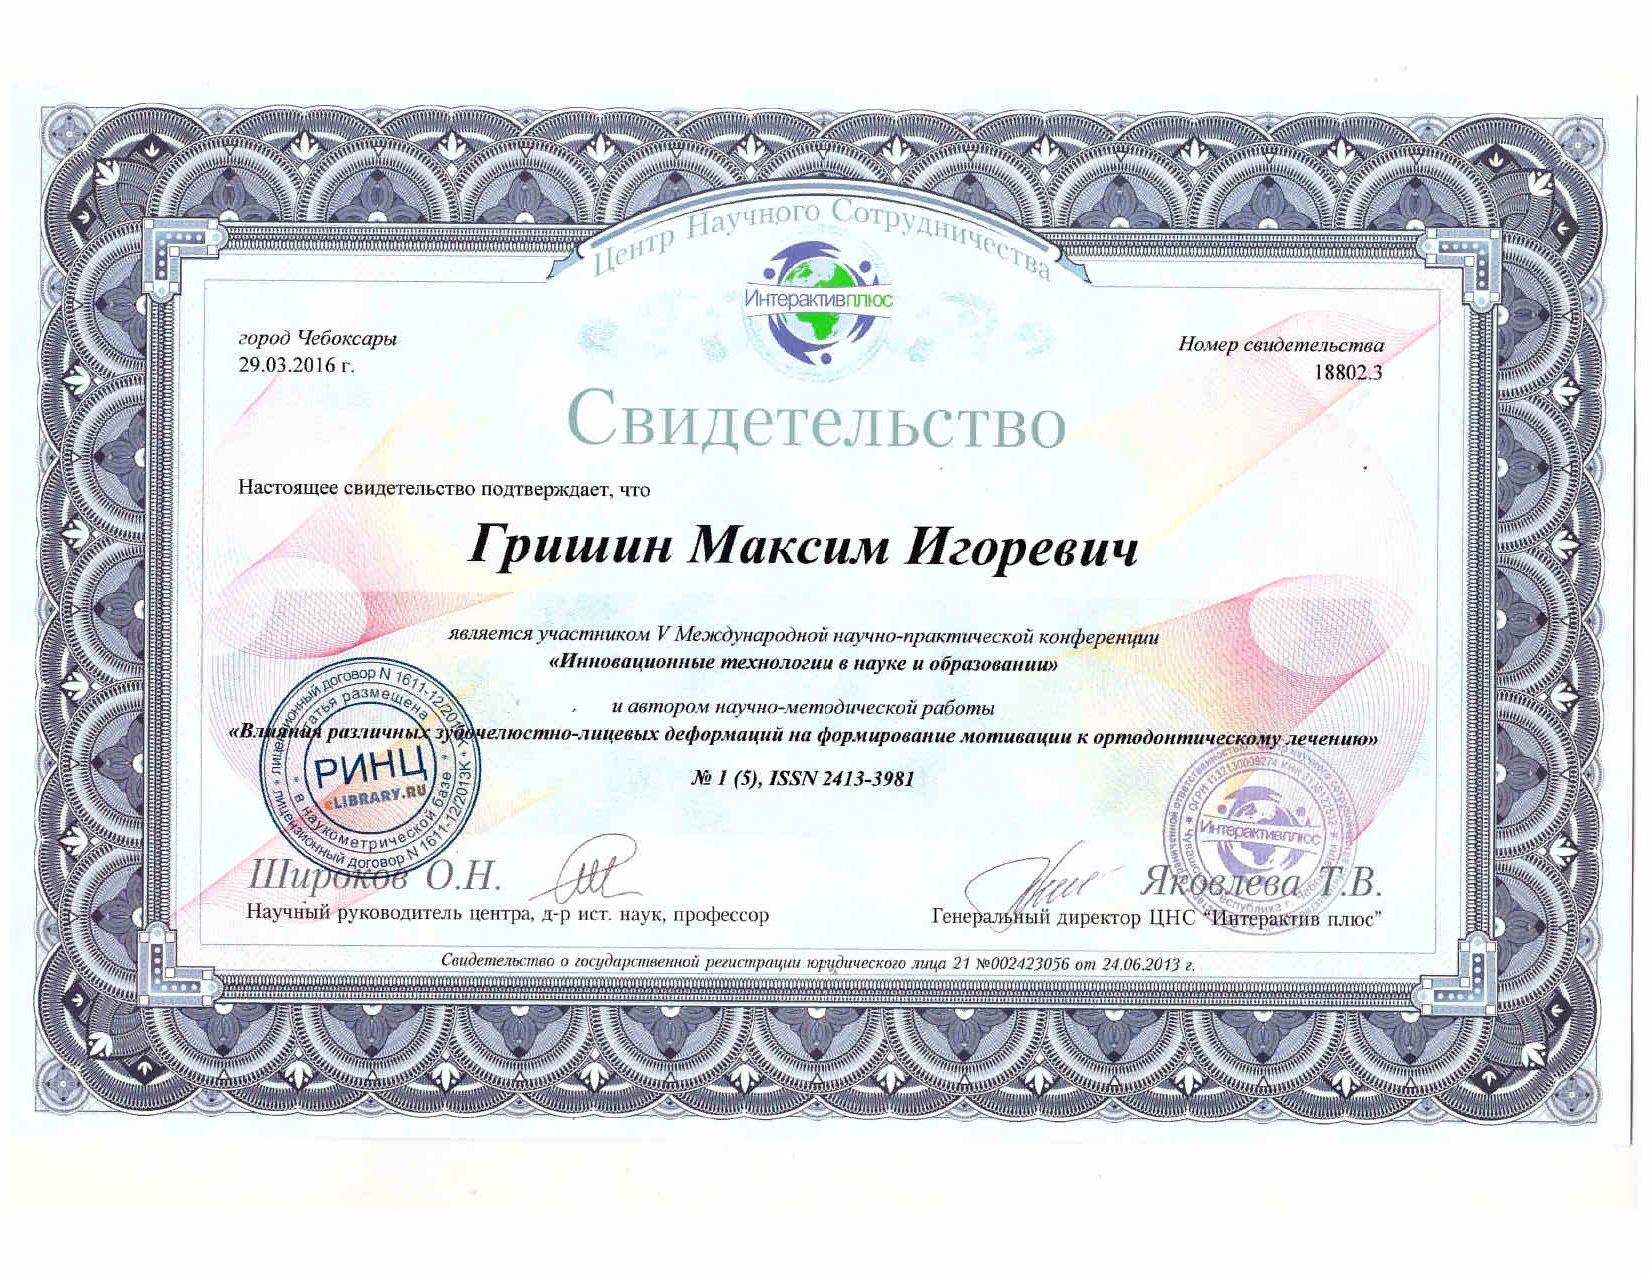 Сертификацы и лицензии Гришин Максим Игоревич